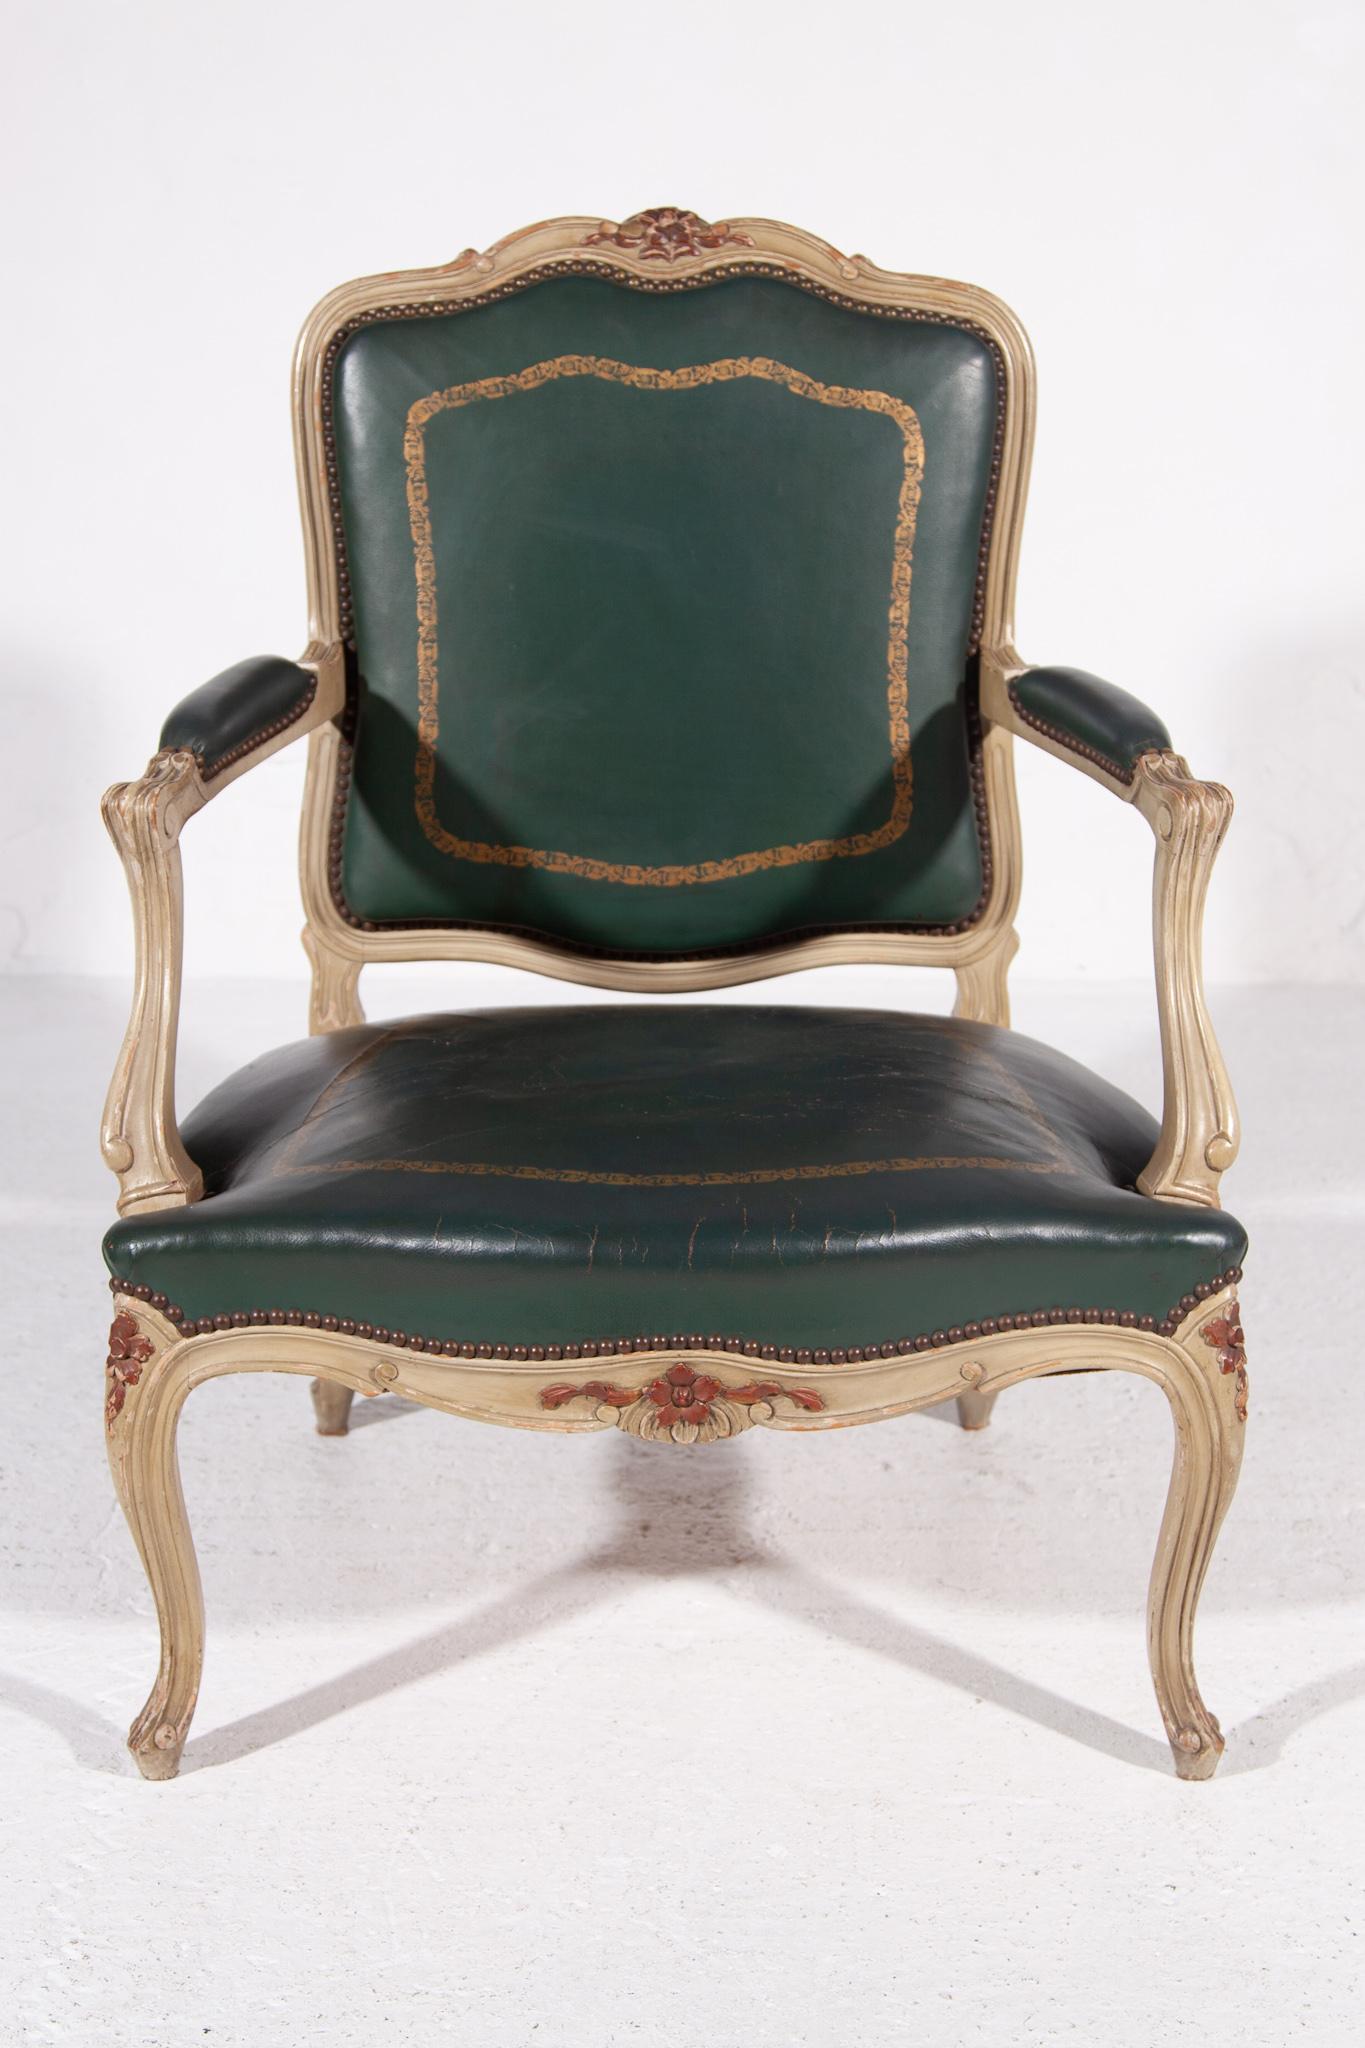 Ein Cabrio-Sessel im Louis XV-Stil aus weiß lackiertem Holz, der auf vier Cabriole-Beinen steht, die mit geschnitzten Blättern und Blumen verziert sind. Sitzfläche und Rückenlehne sind mit Messingnägeln versehen und mit grün patiniertem Leder